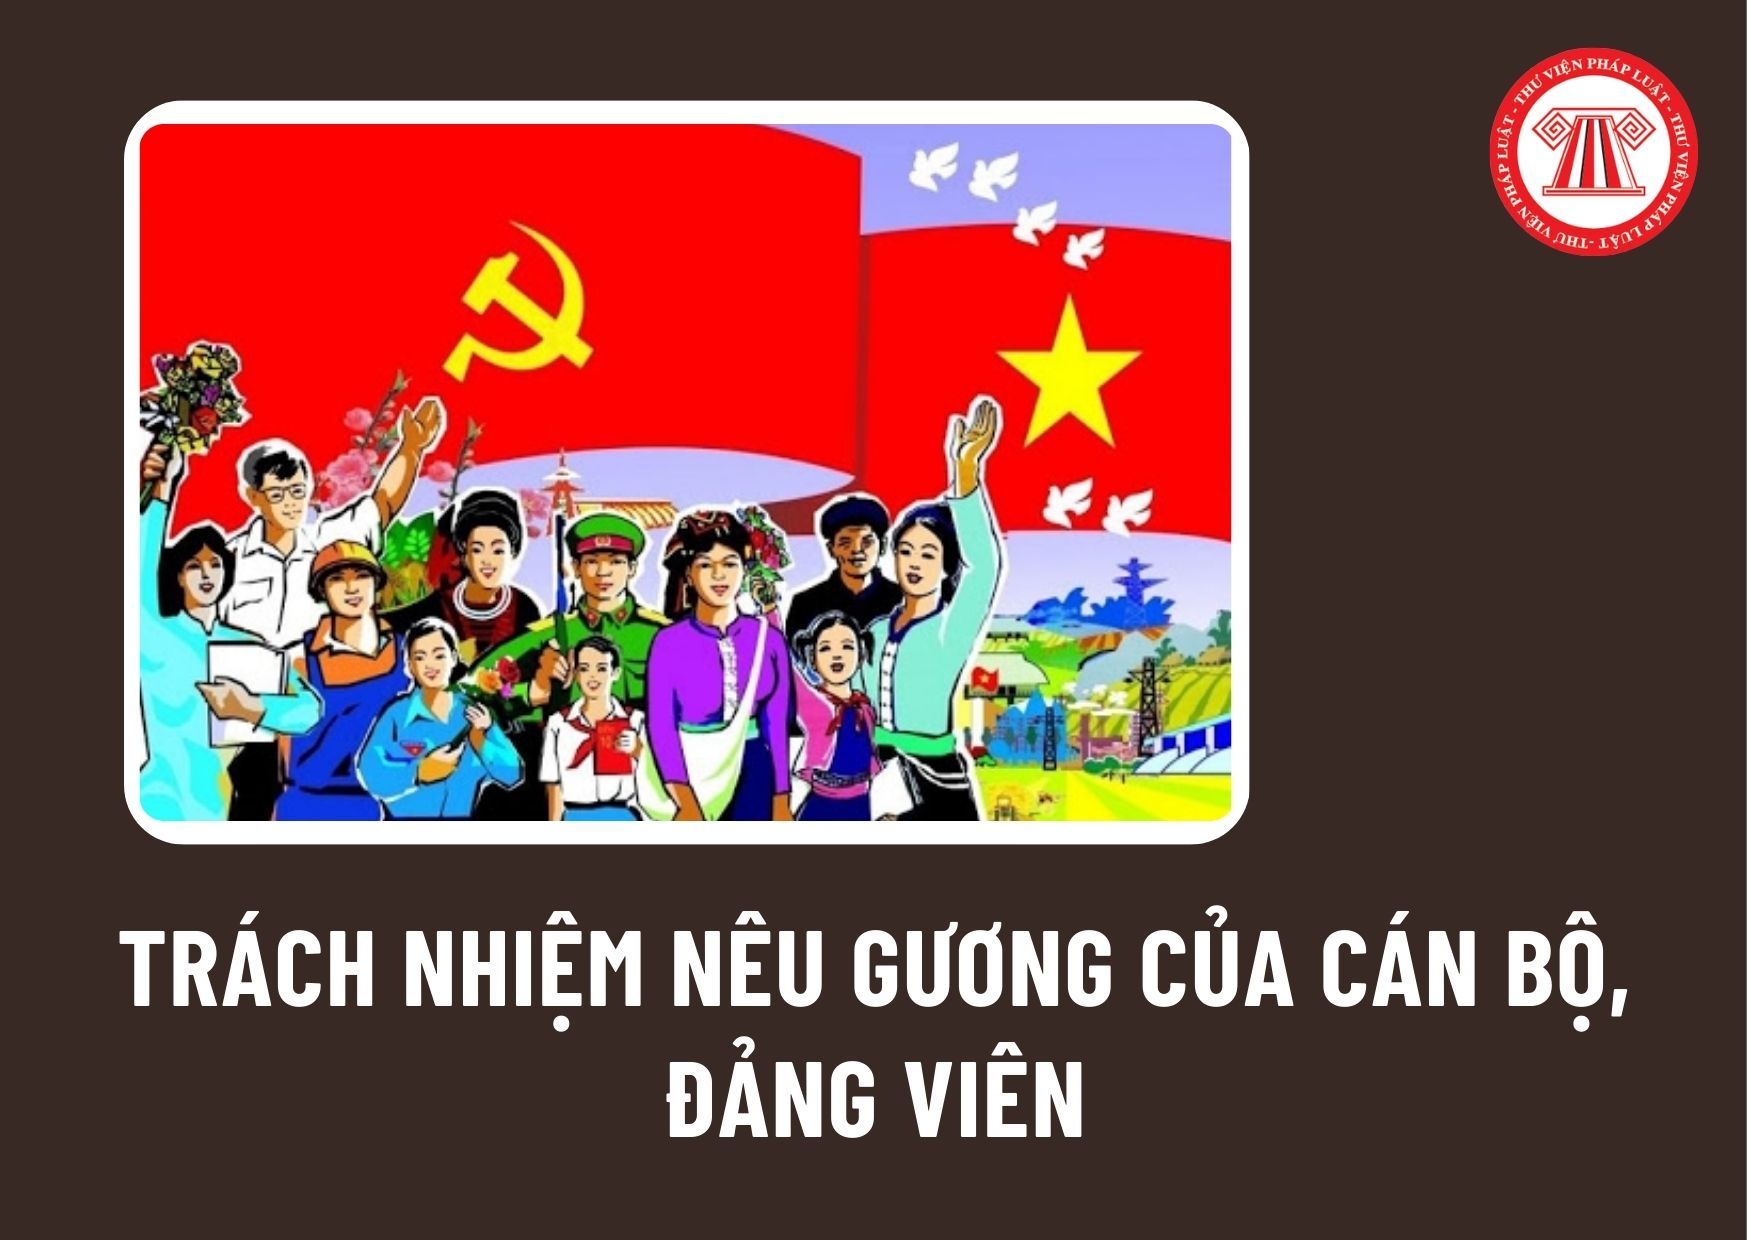 Trách nhiệm nêu gương của cán bộ, đảng viên trong việc học tập và làm theo tấm gương đạo đức Hồ Chí Minh ra sao?